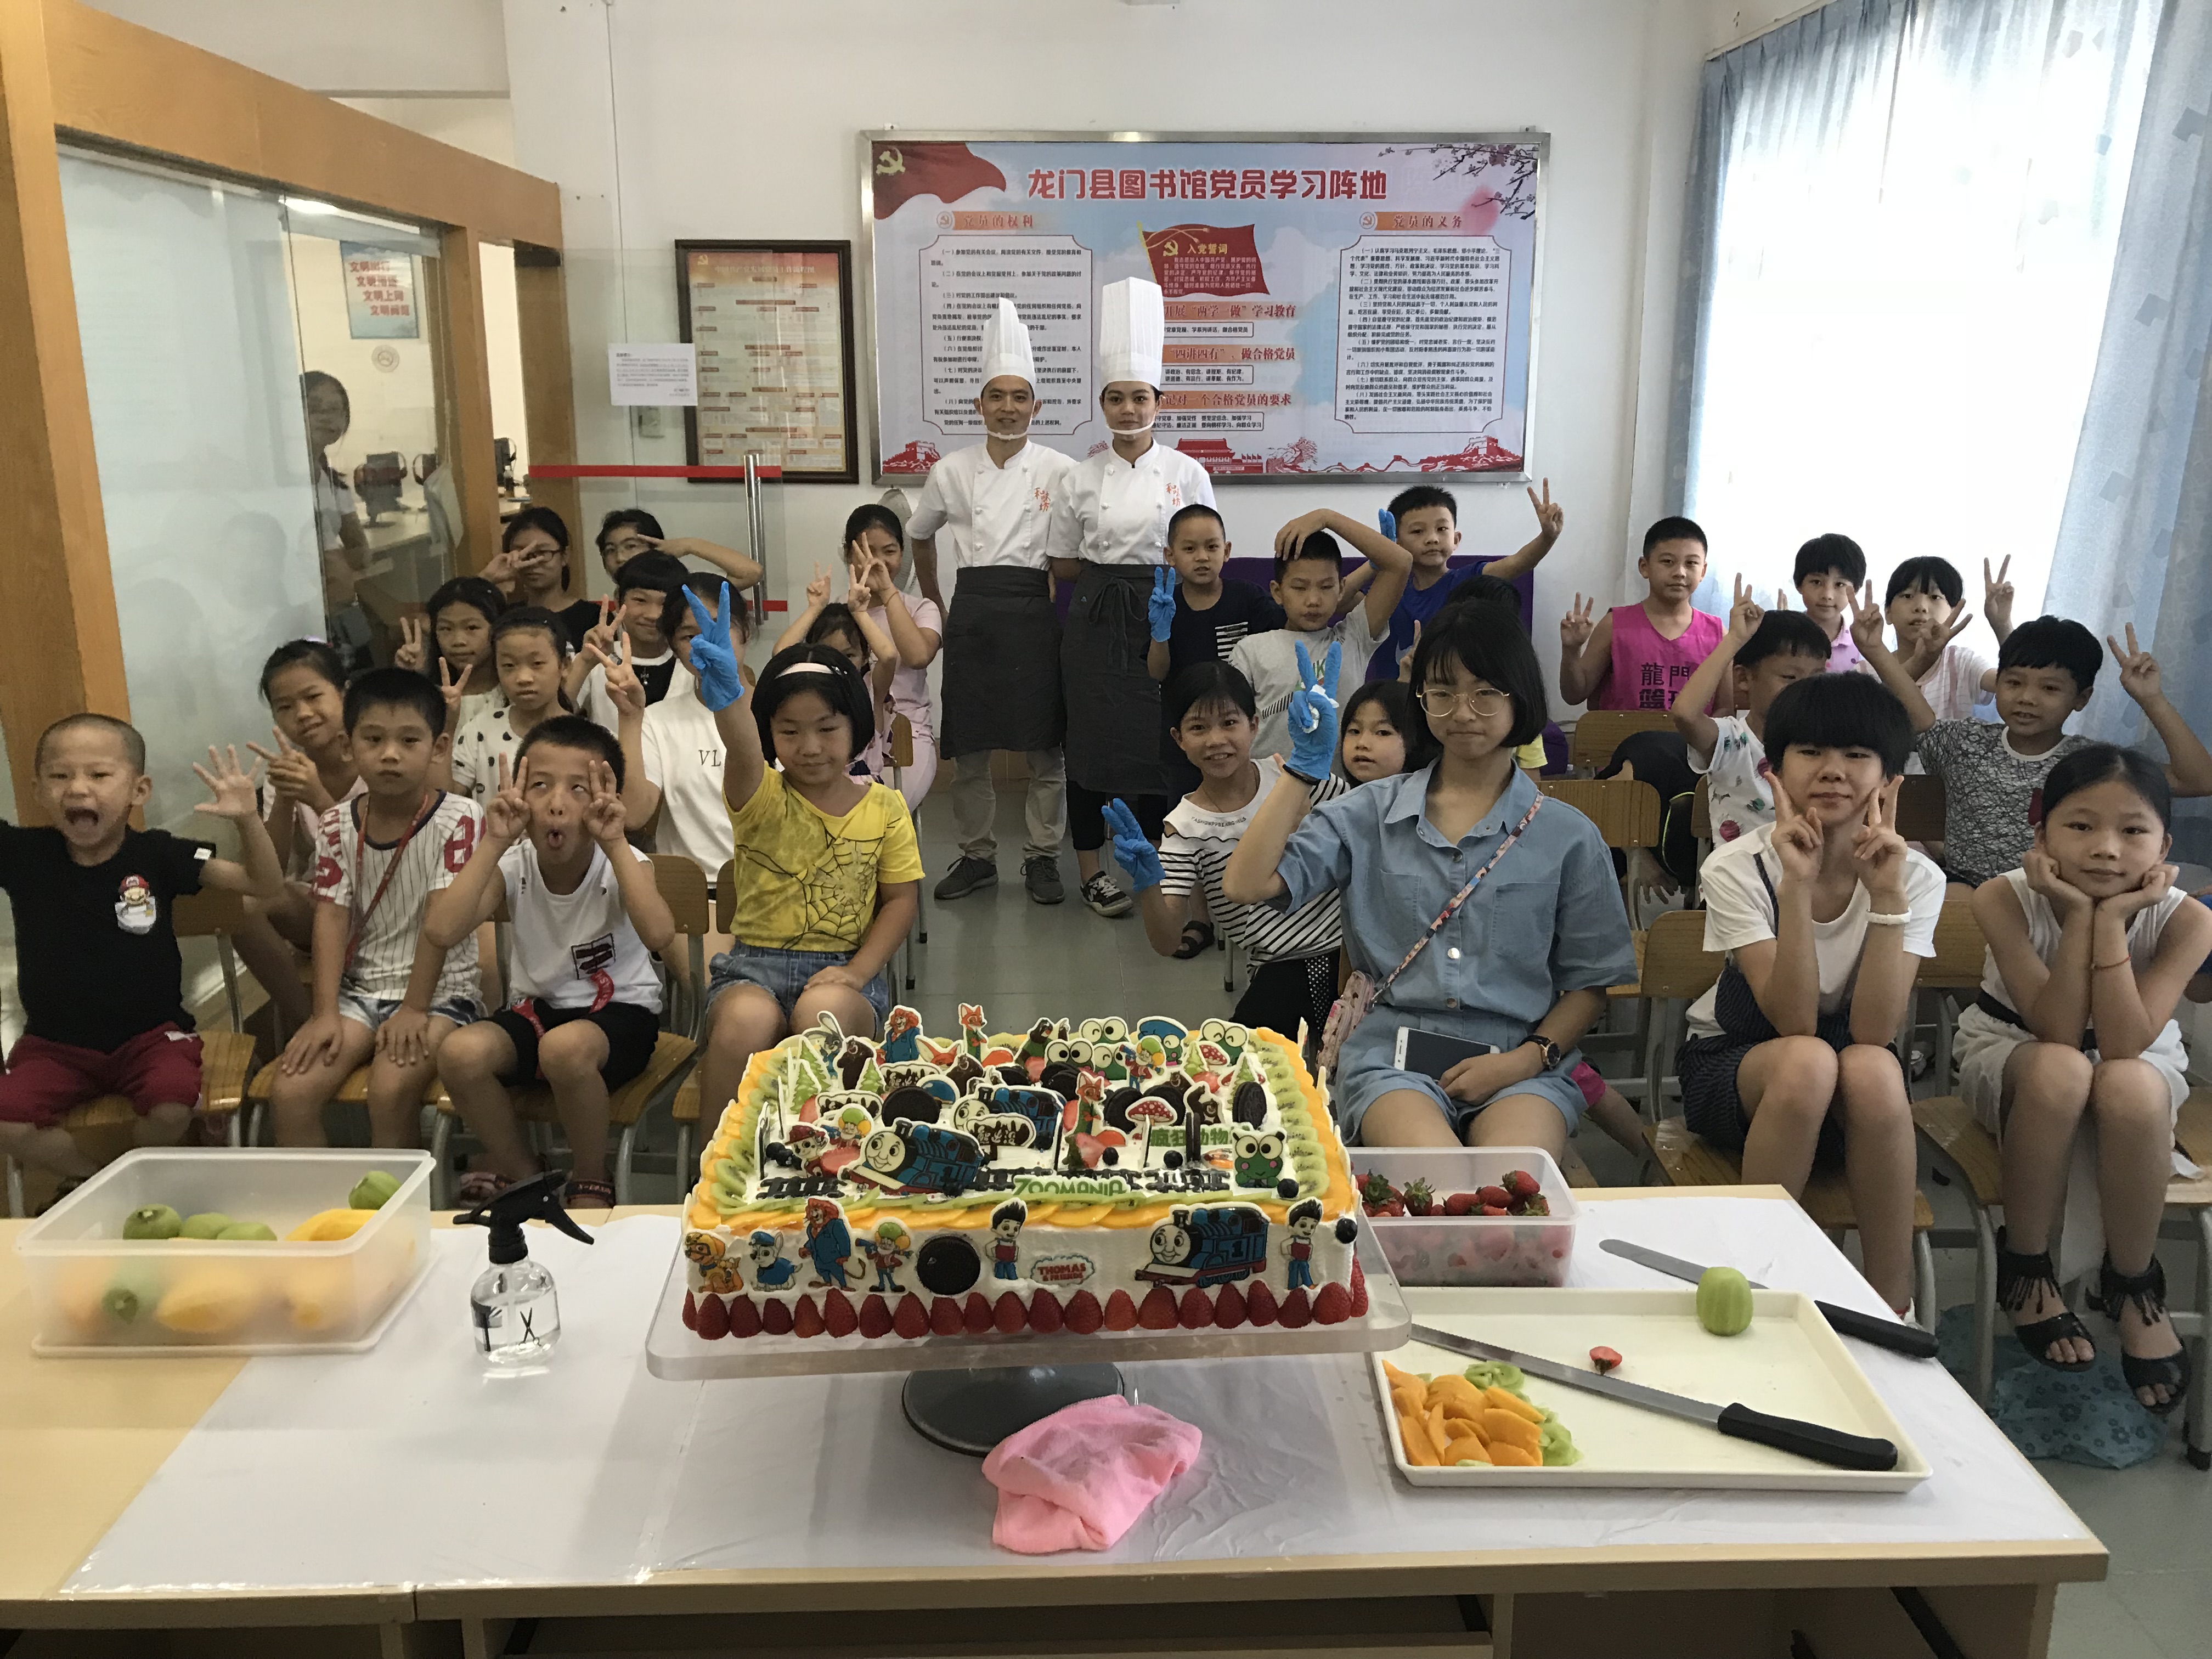 龙门县图书馆开展2018年暑期公益系列活动之三“夏日甜点•蛋糕DIY”